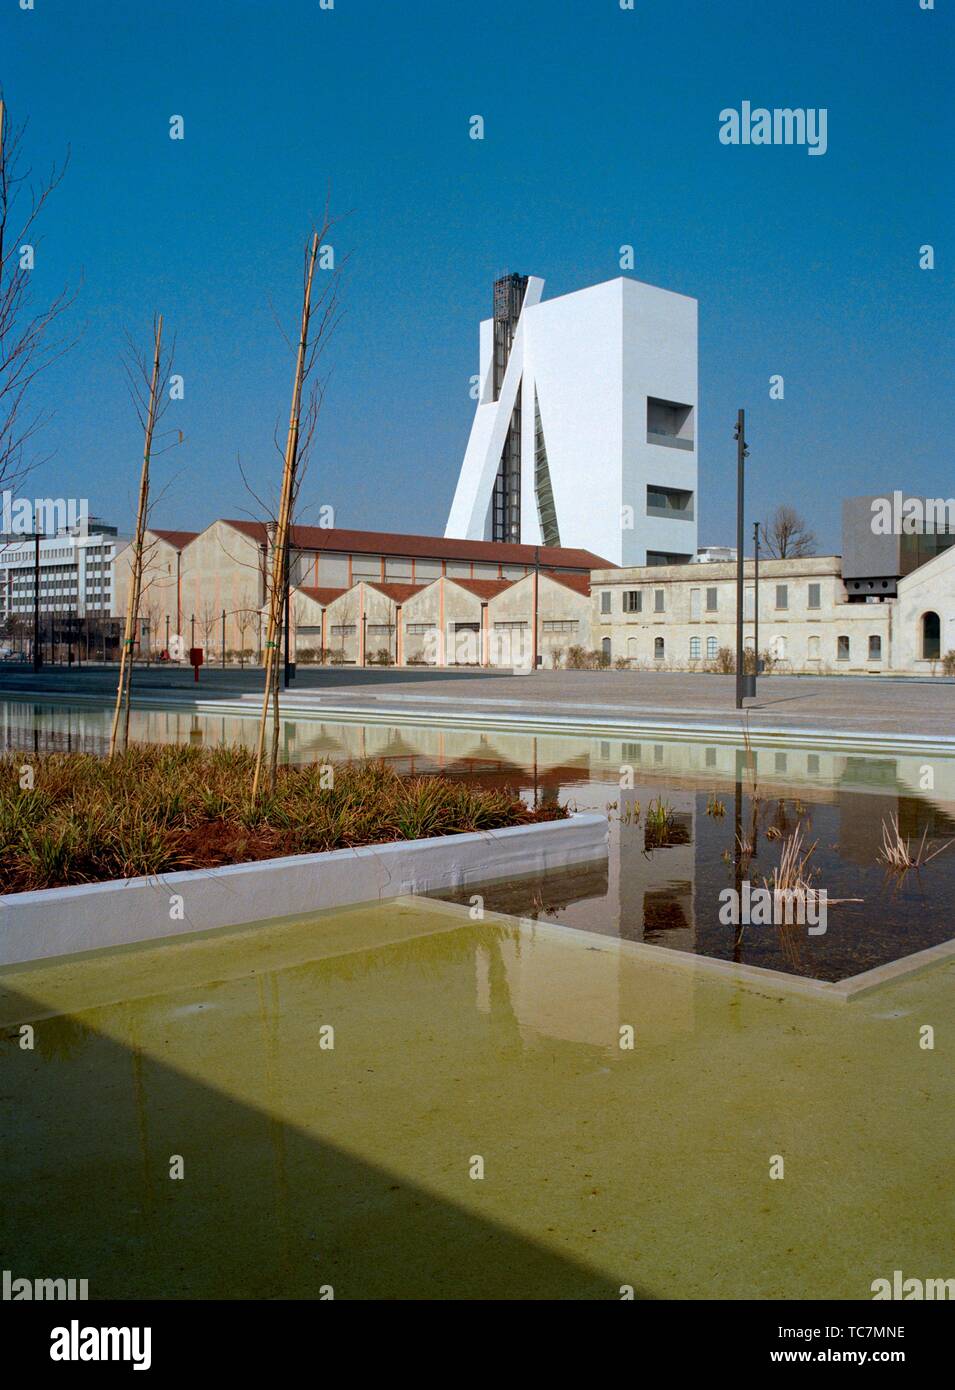 Italien, Lombardei, Mailand, Piazza Adriano Olivetti Square, Fondazione  Prada Foundation, Detail Turm von Rem Koolhaas Architekt Stockfotografie -  Alamy